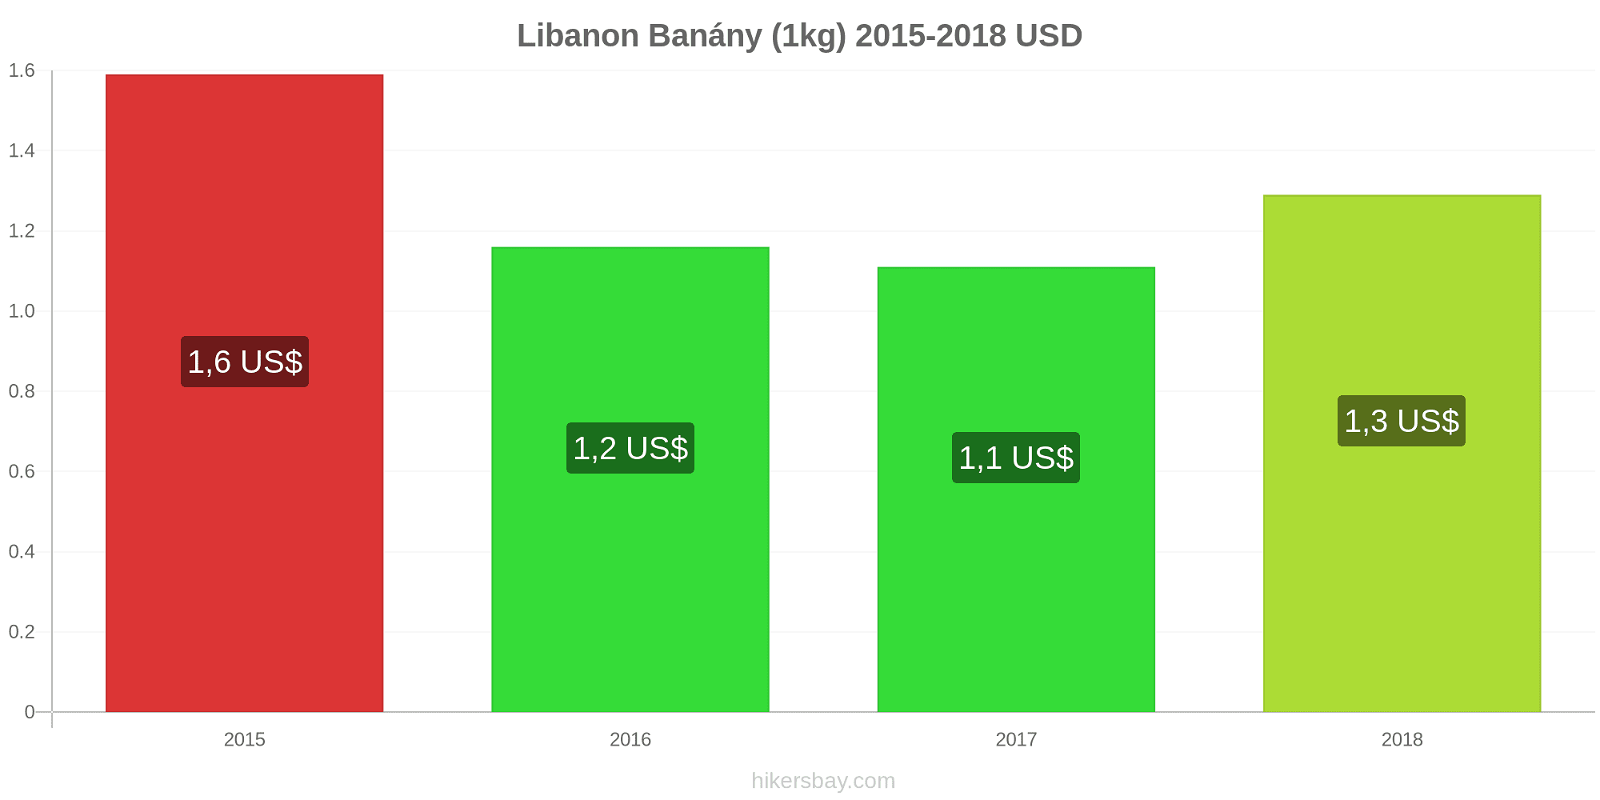 Libanon změny cen Banány (1kg) hikersbay.com